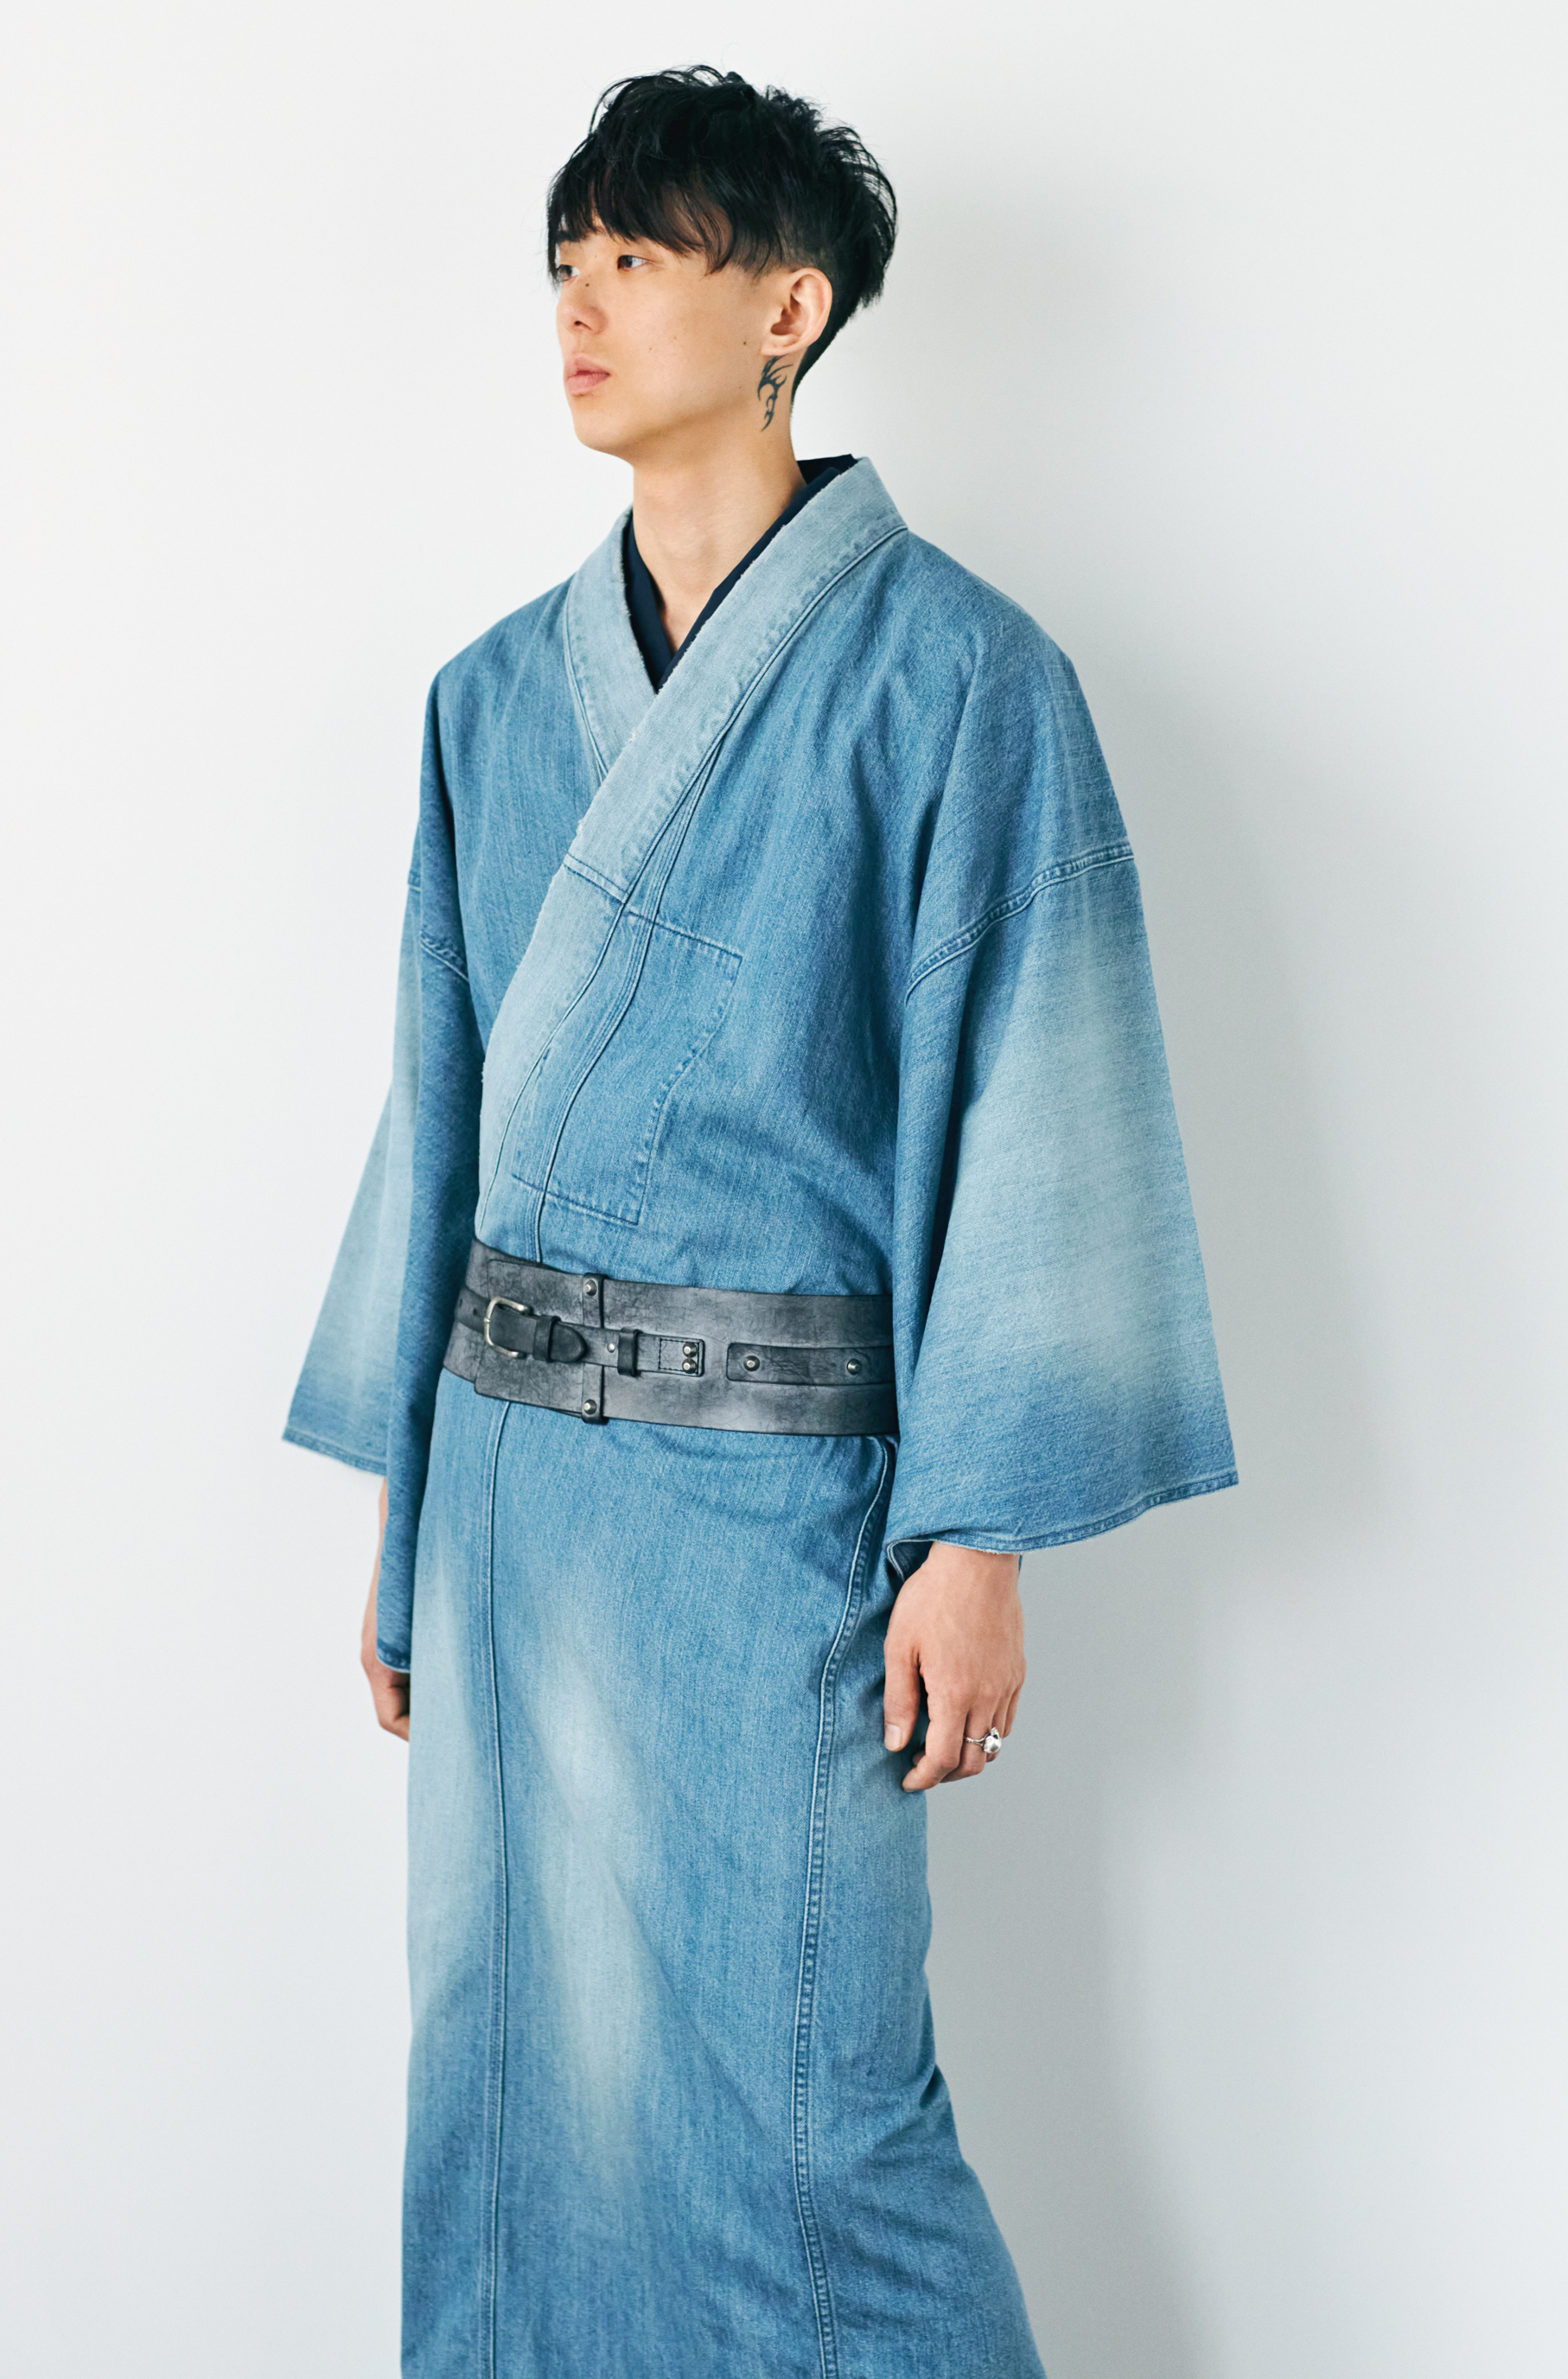 KAPUKI original denim kimono 2yr men's indigo